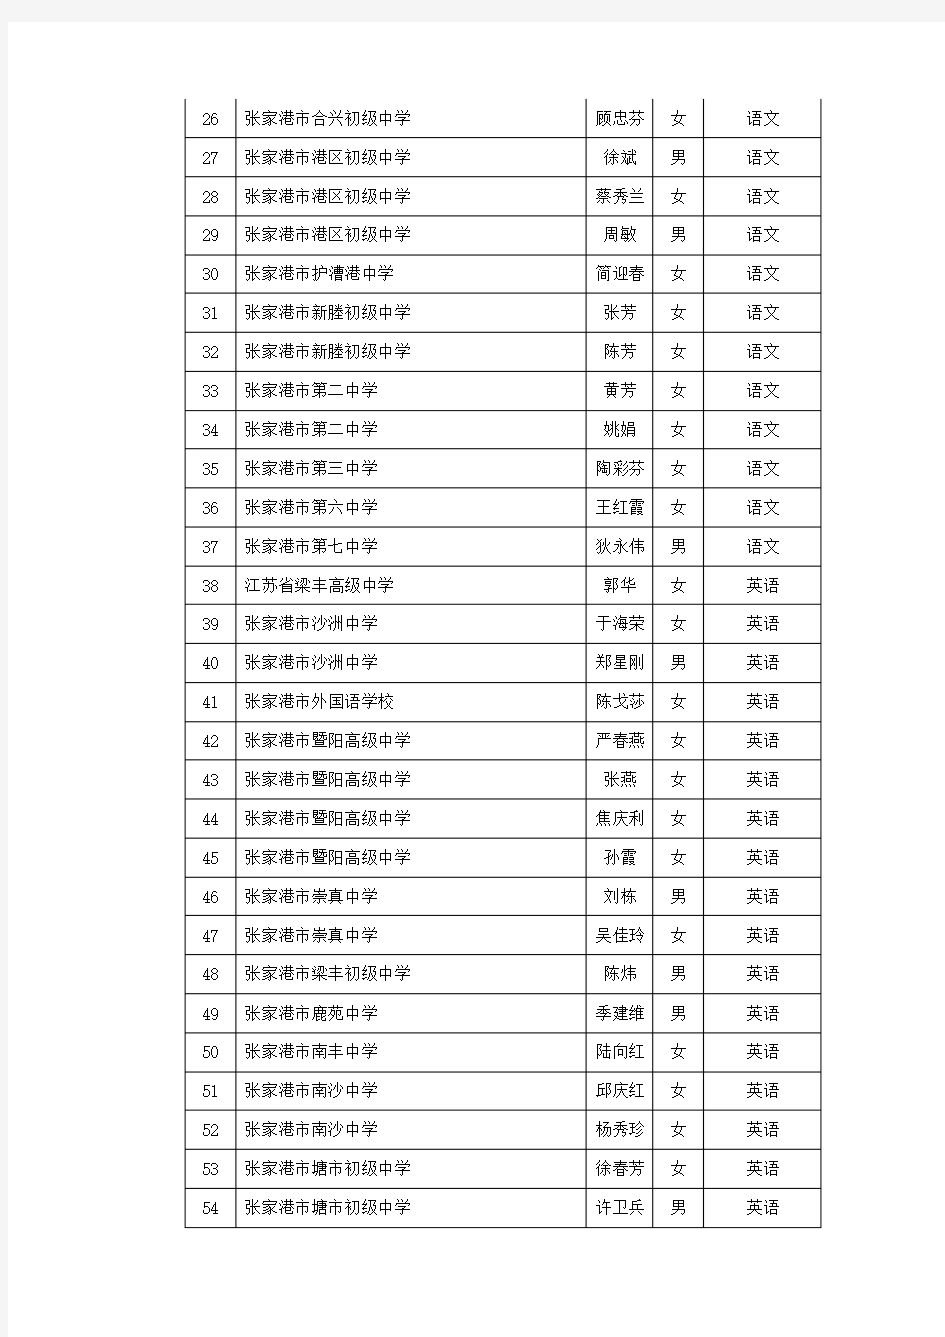 2013年苏州高级教师评审通过人员一览表